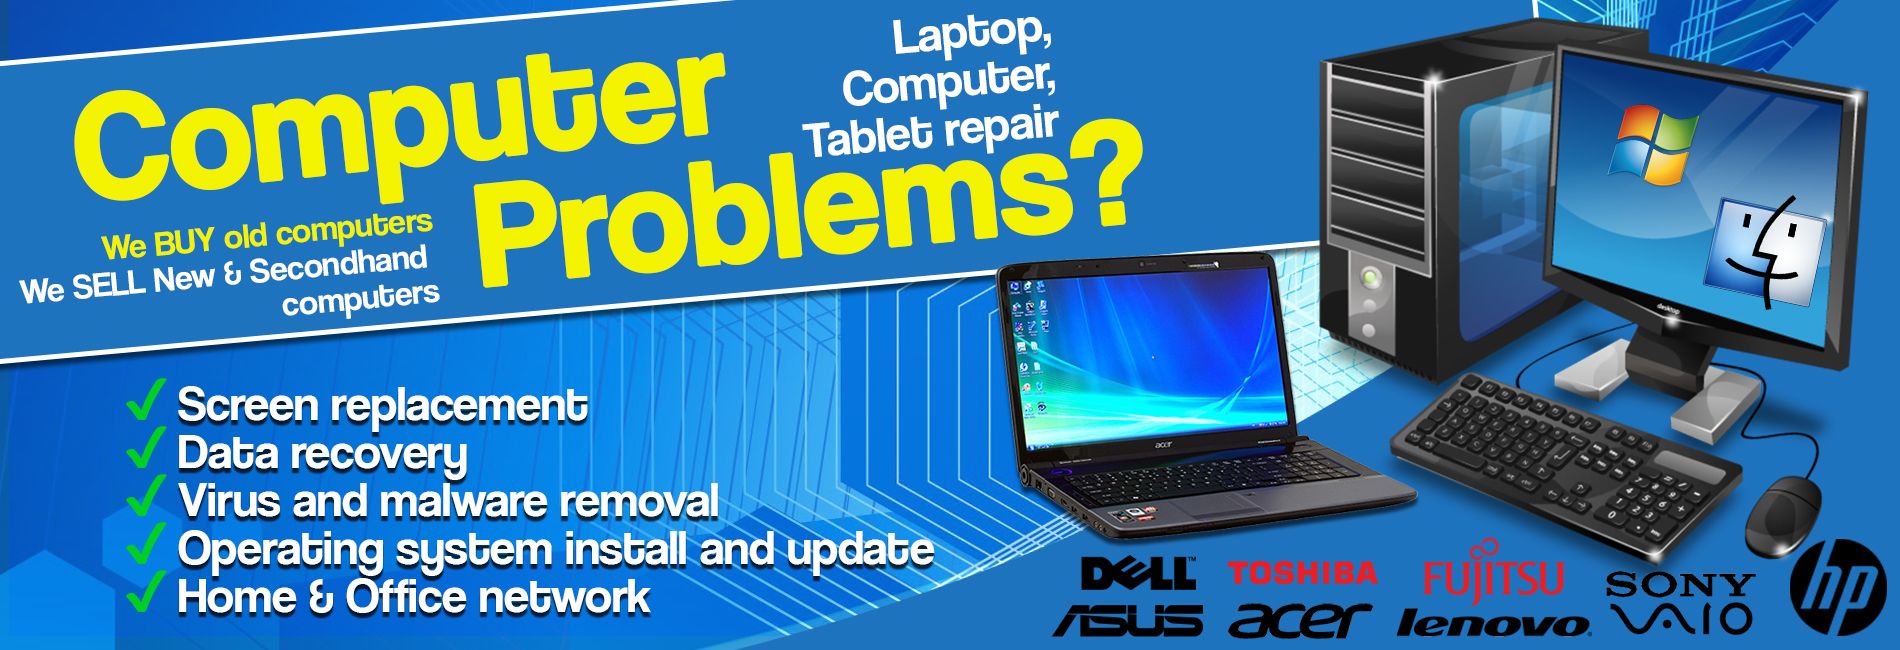 Laptop Repair in Gurgaon Near Me - 8375051311 - Bhumi ...